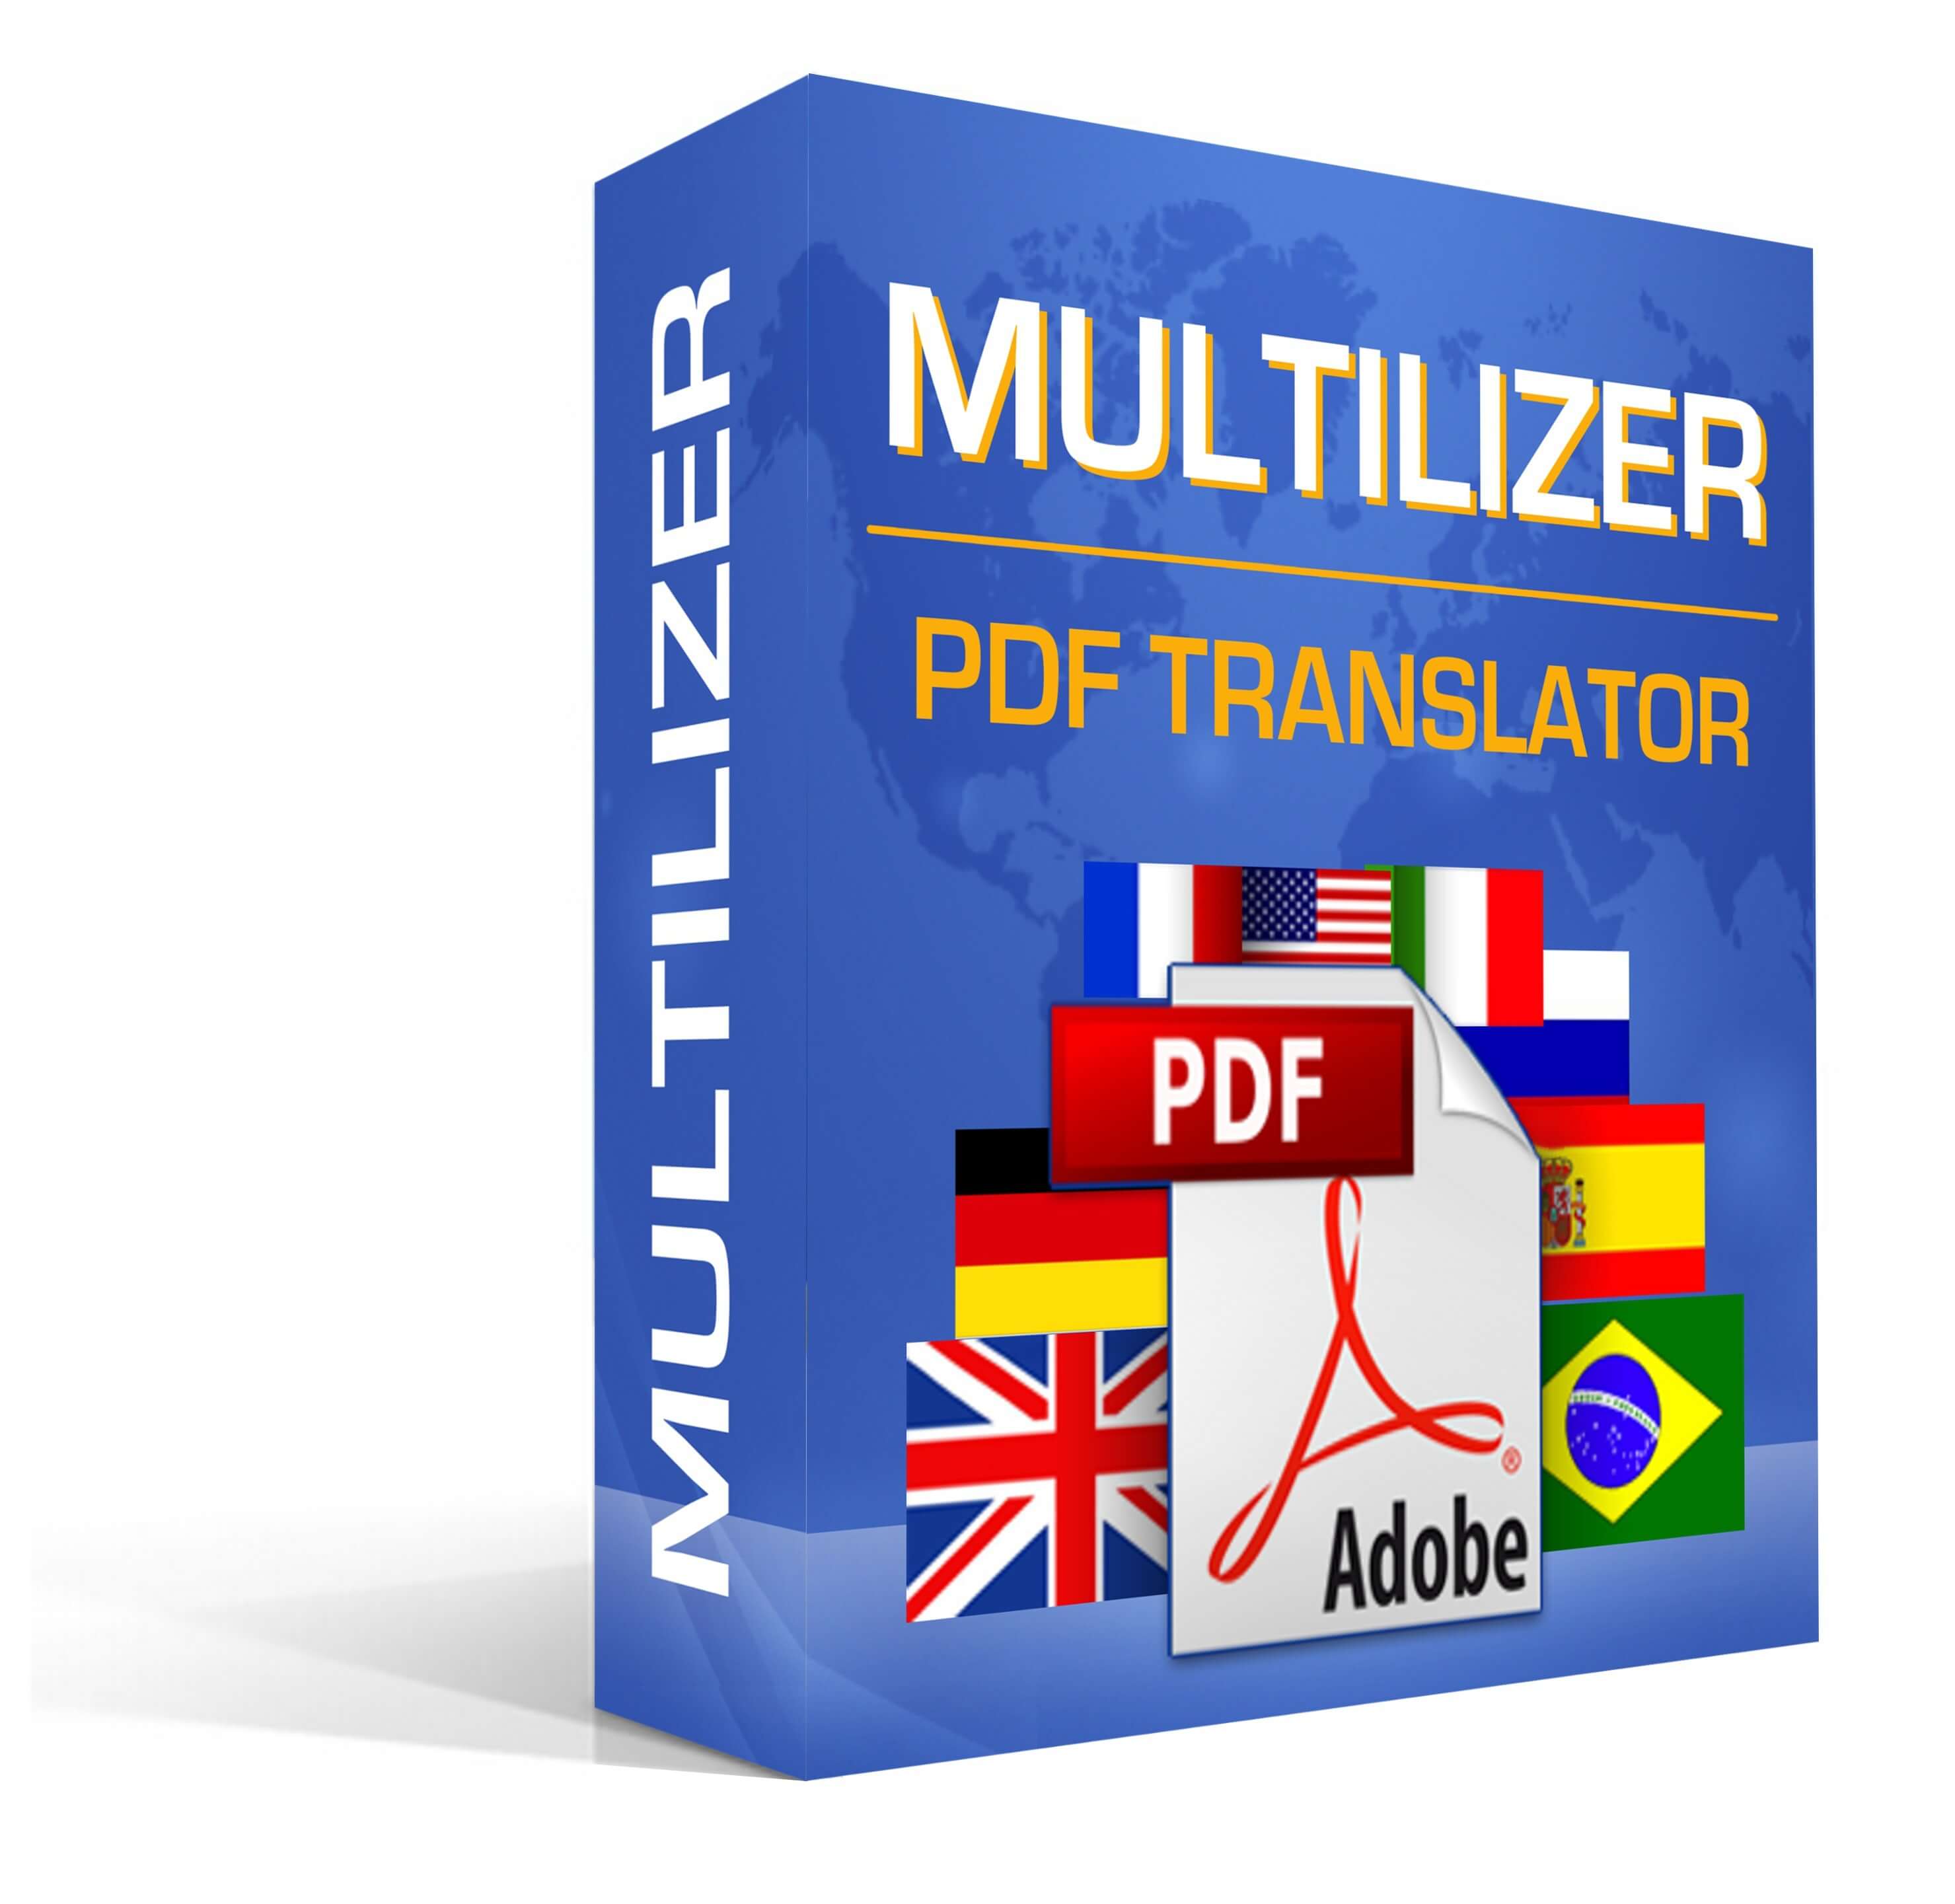 Multilizer pdf translator 9.4 crack